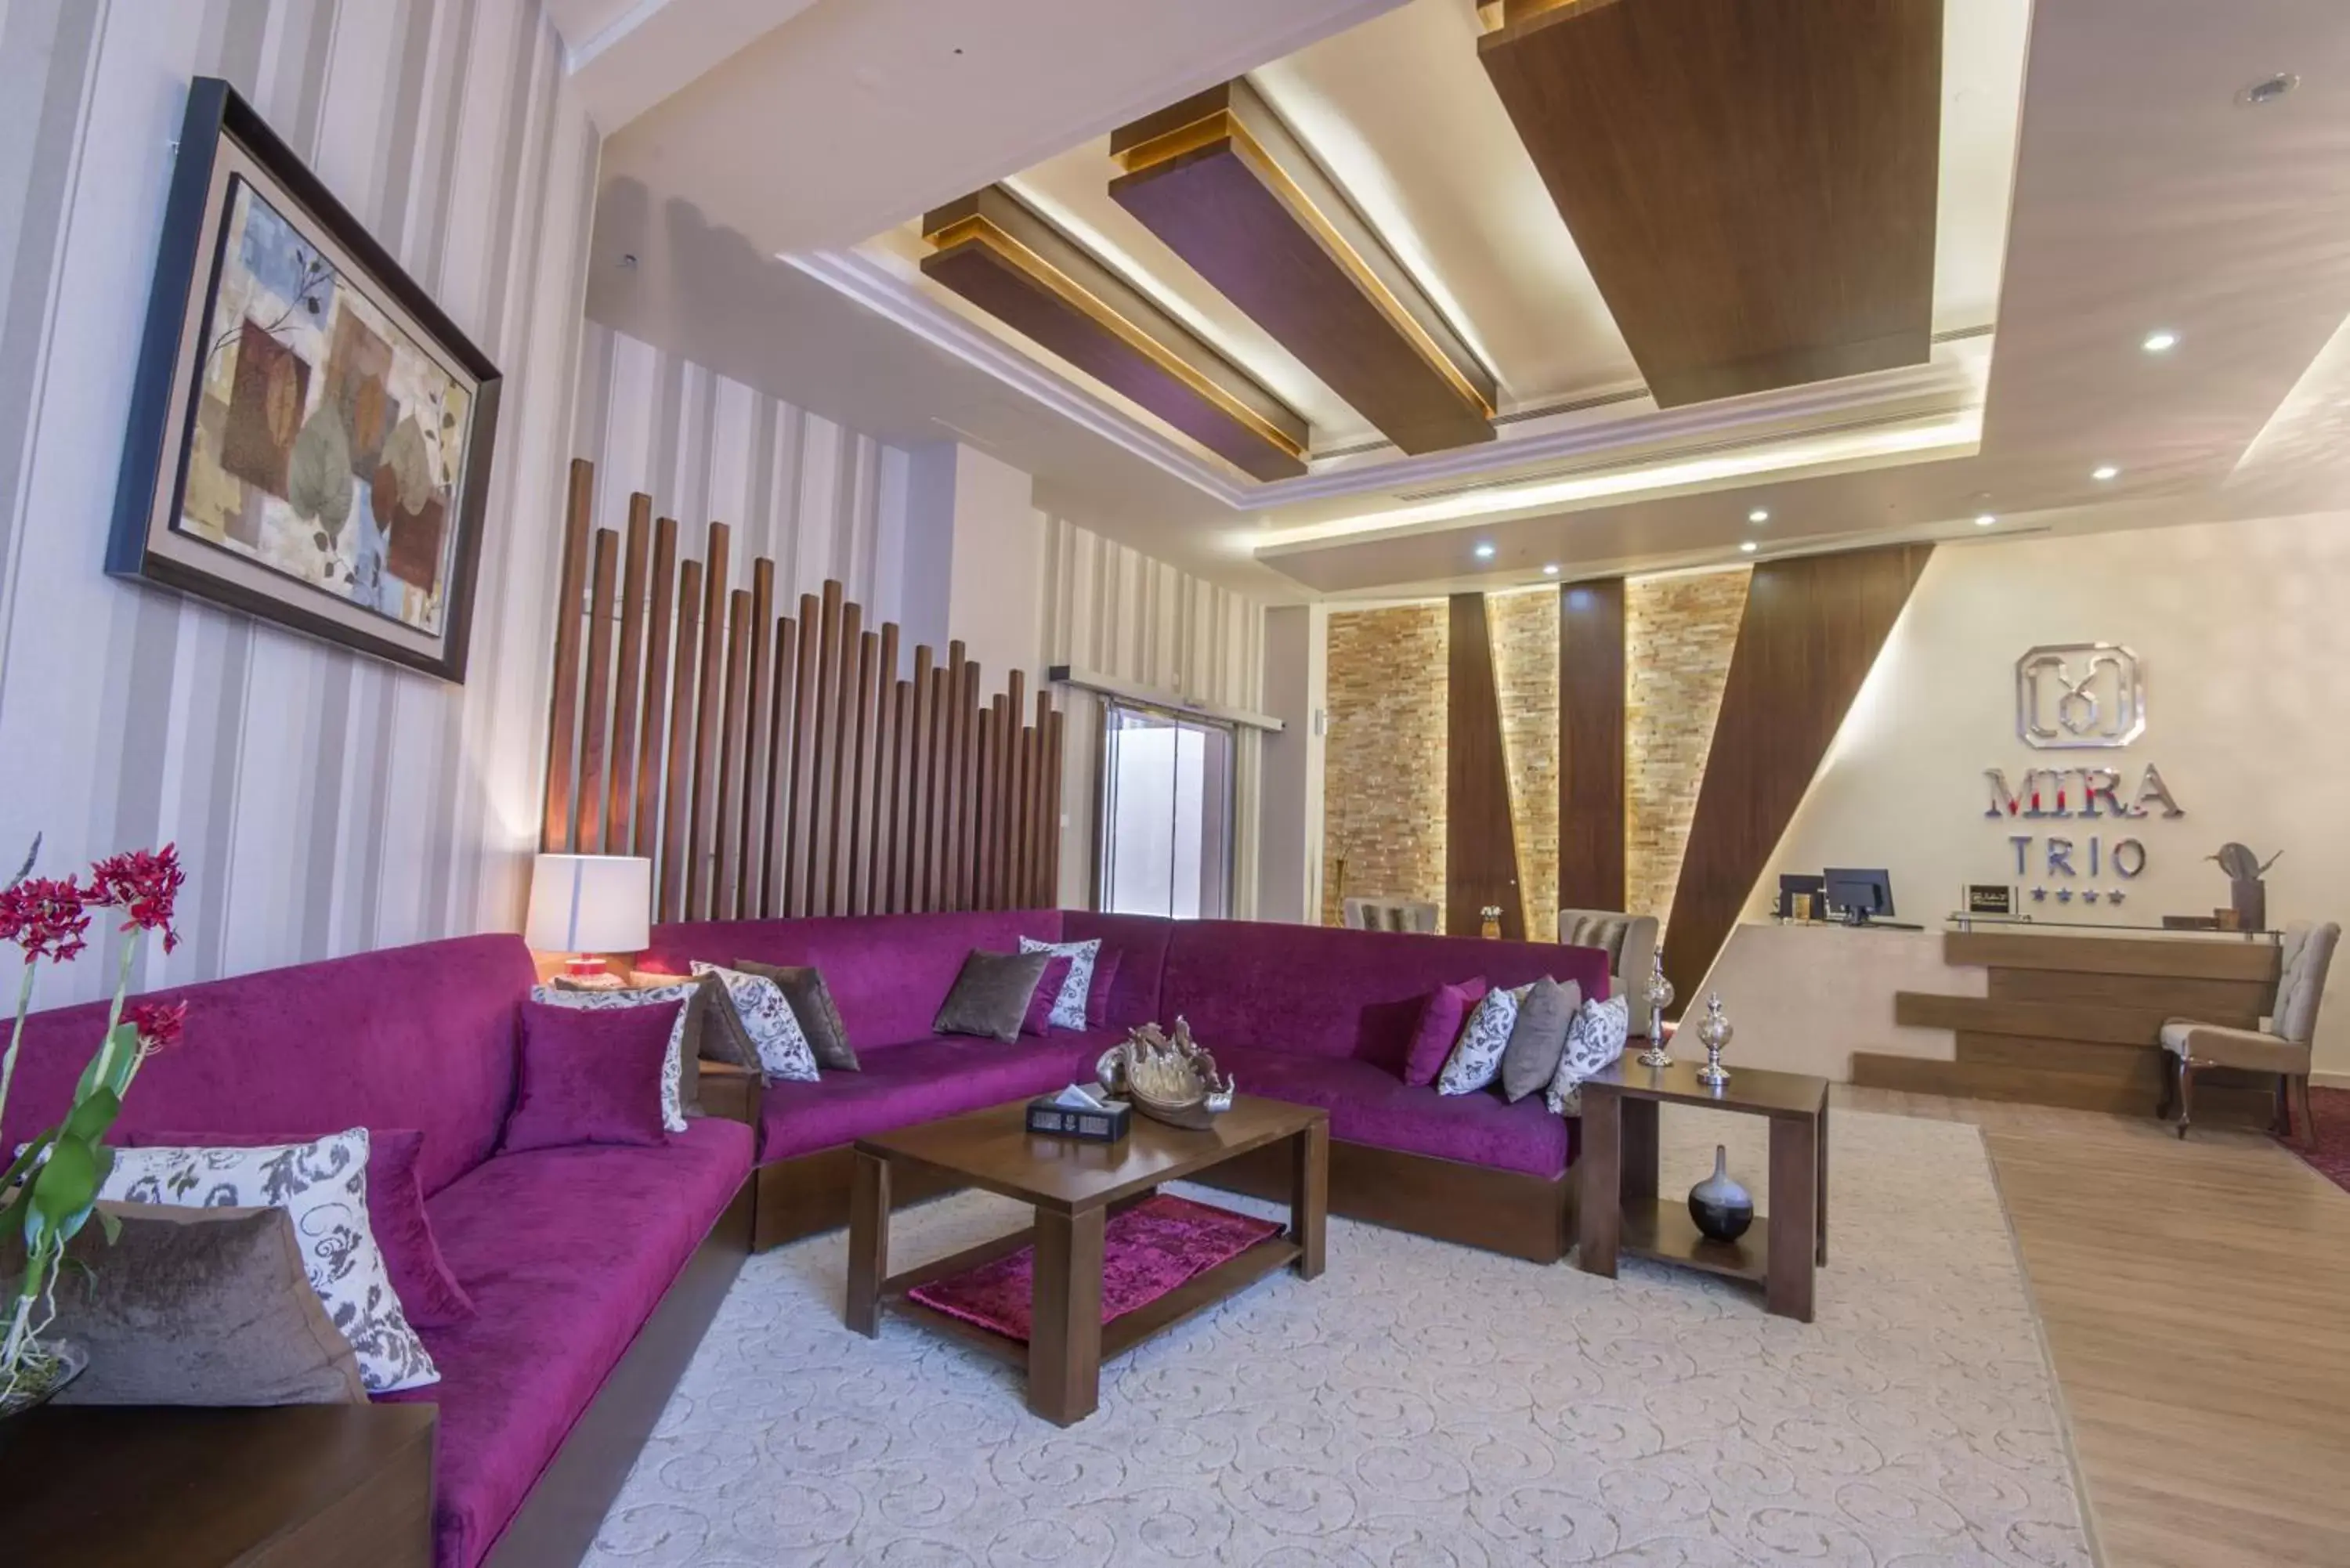 Lobby or reception, Seating Area in Mira Trio Hotel - Riyadh - Tahlia Street